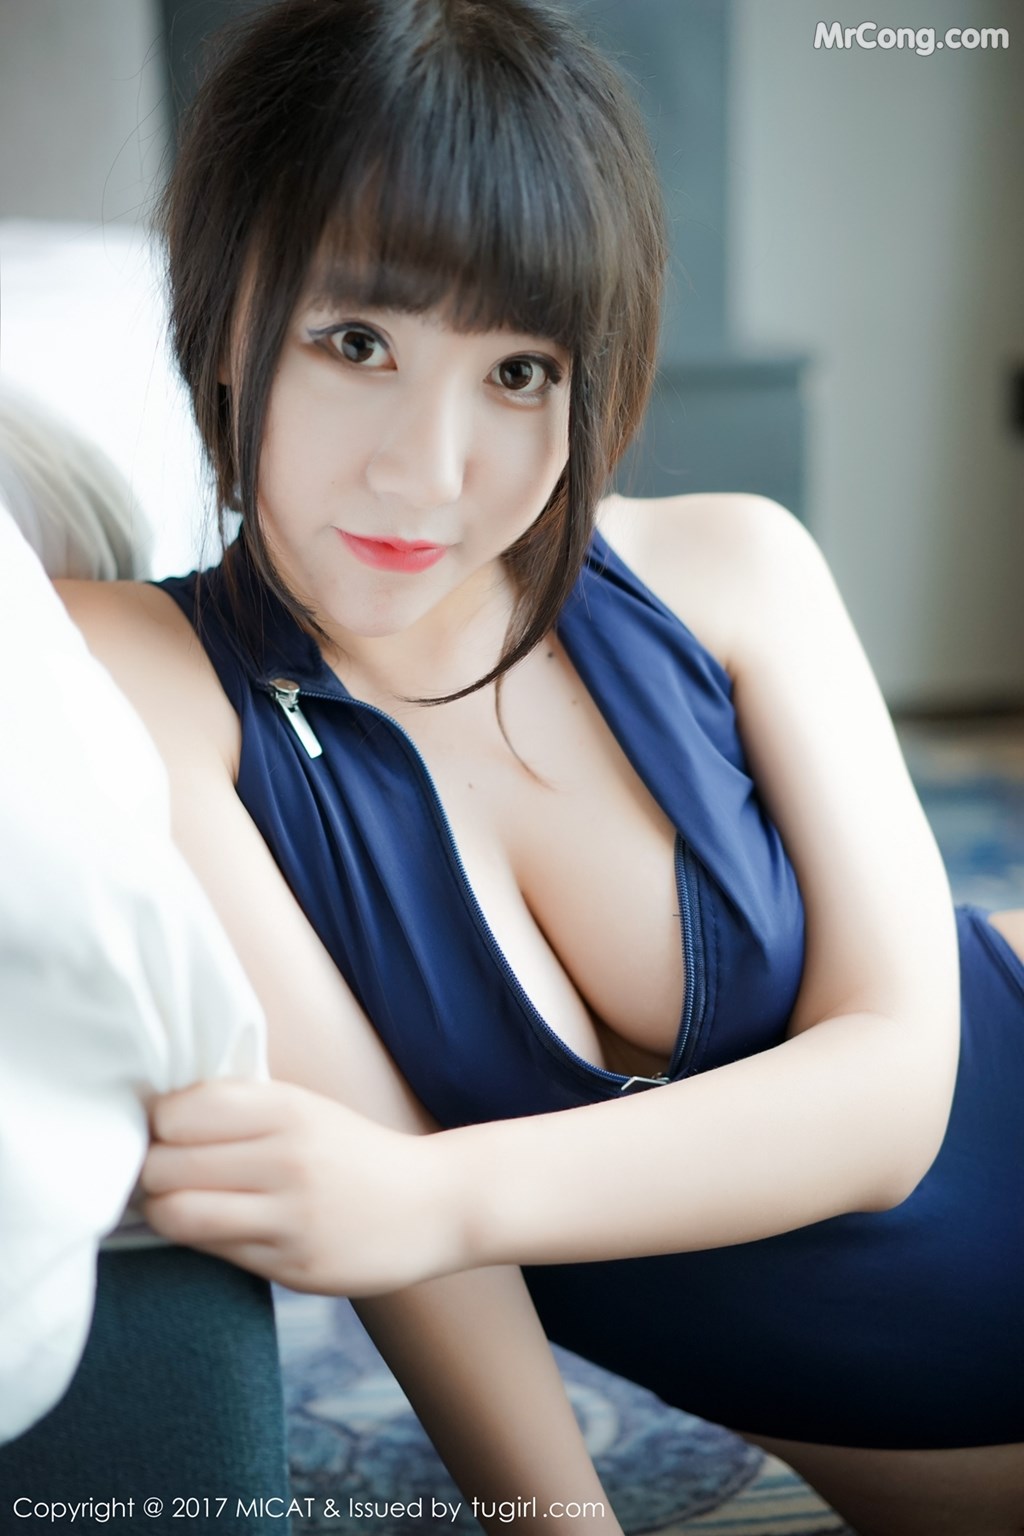 MiCat Vol.027: Model Xia Xiao Xiao (夏 笑笑 Summer) (48 photos)